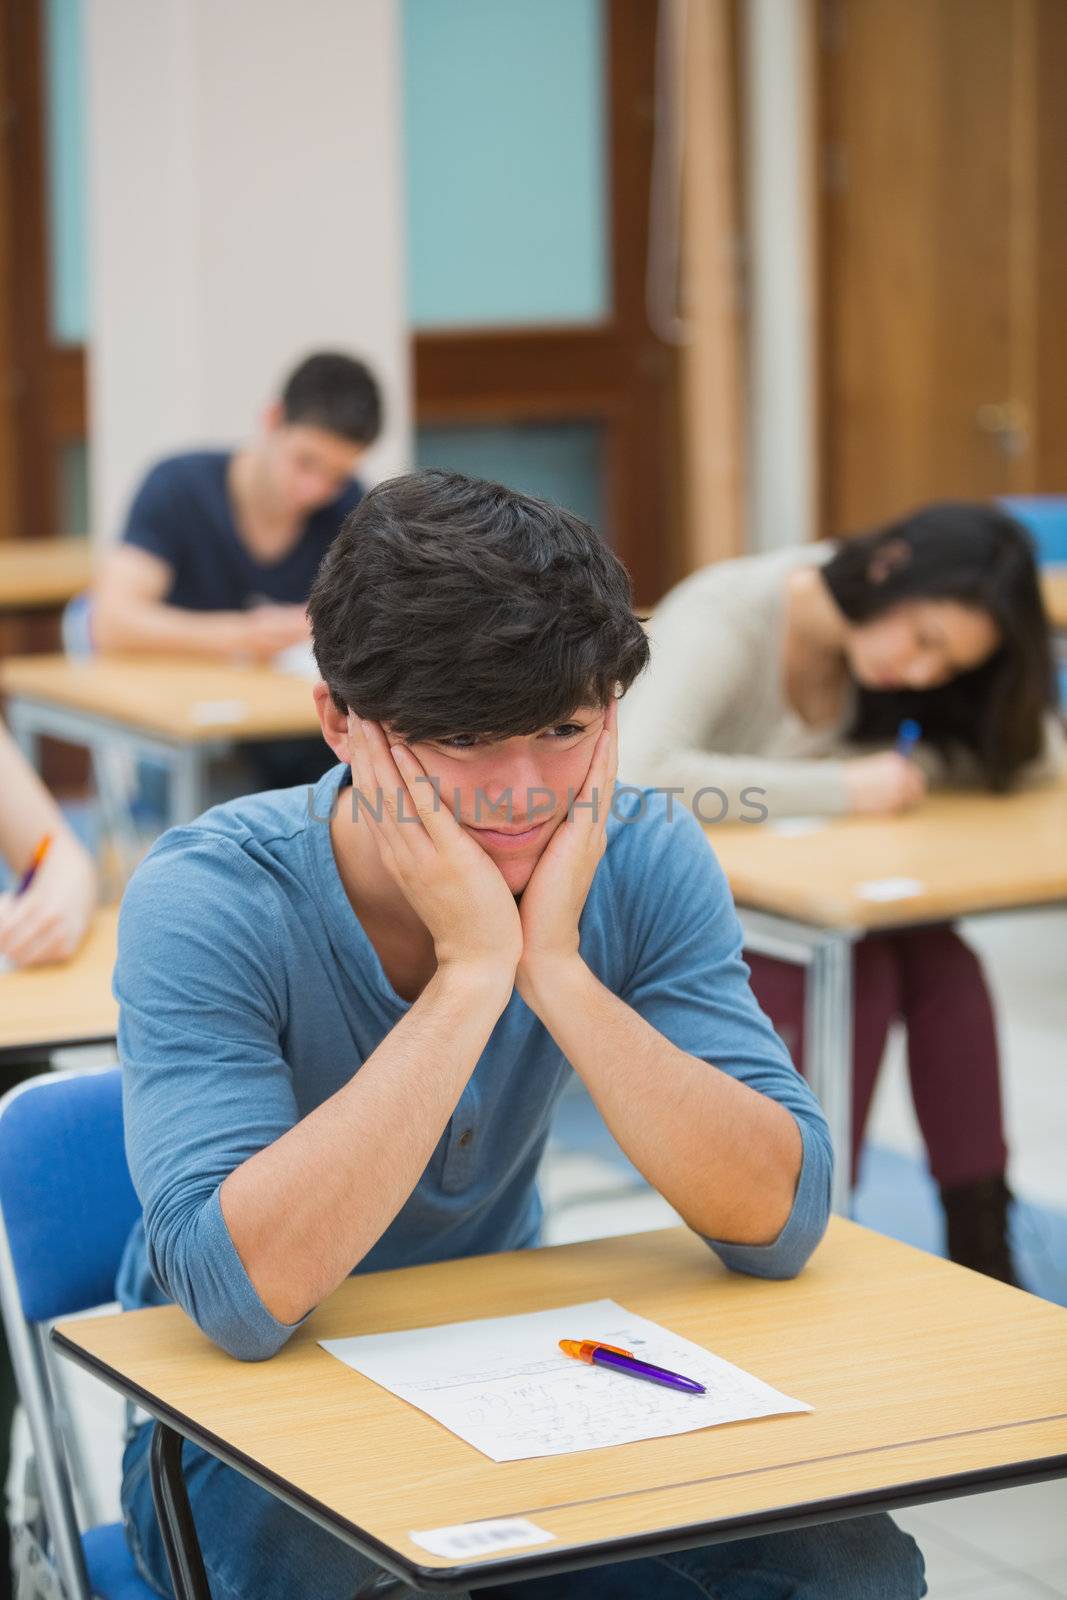 Student looking helpless in exam by Wavebreakmedia